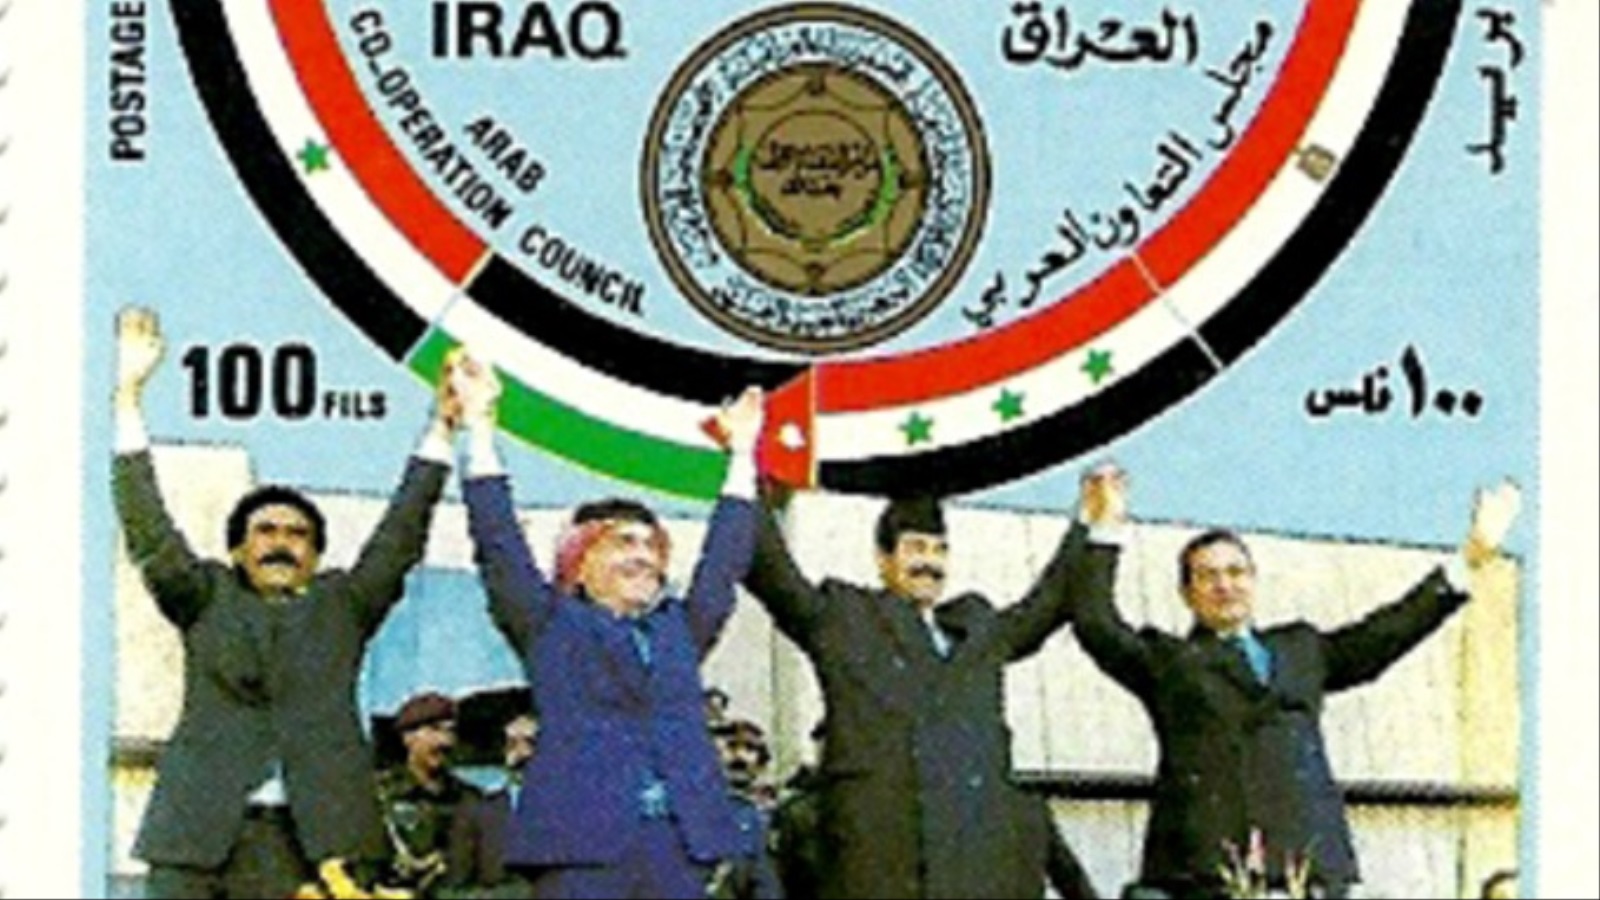 كرد فعل على تأسيس مجلس التعاون الخليجي، أسست العراق ومصر والأردن وشمال اليمن مجلسا قصير العمر عام 1989 تحت اسم مجلس التعاون العربي